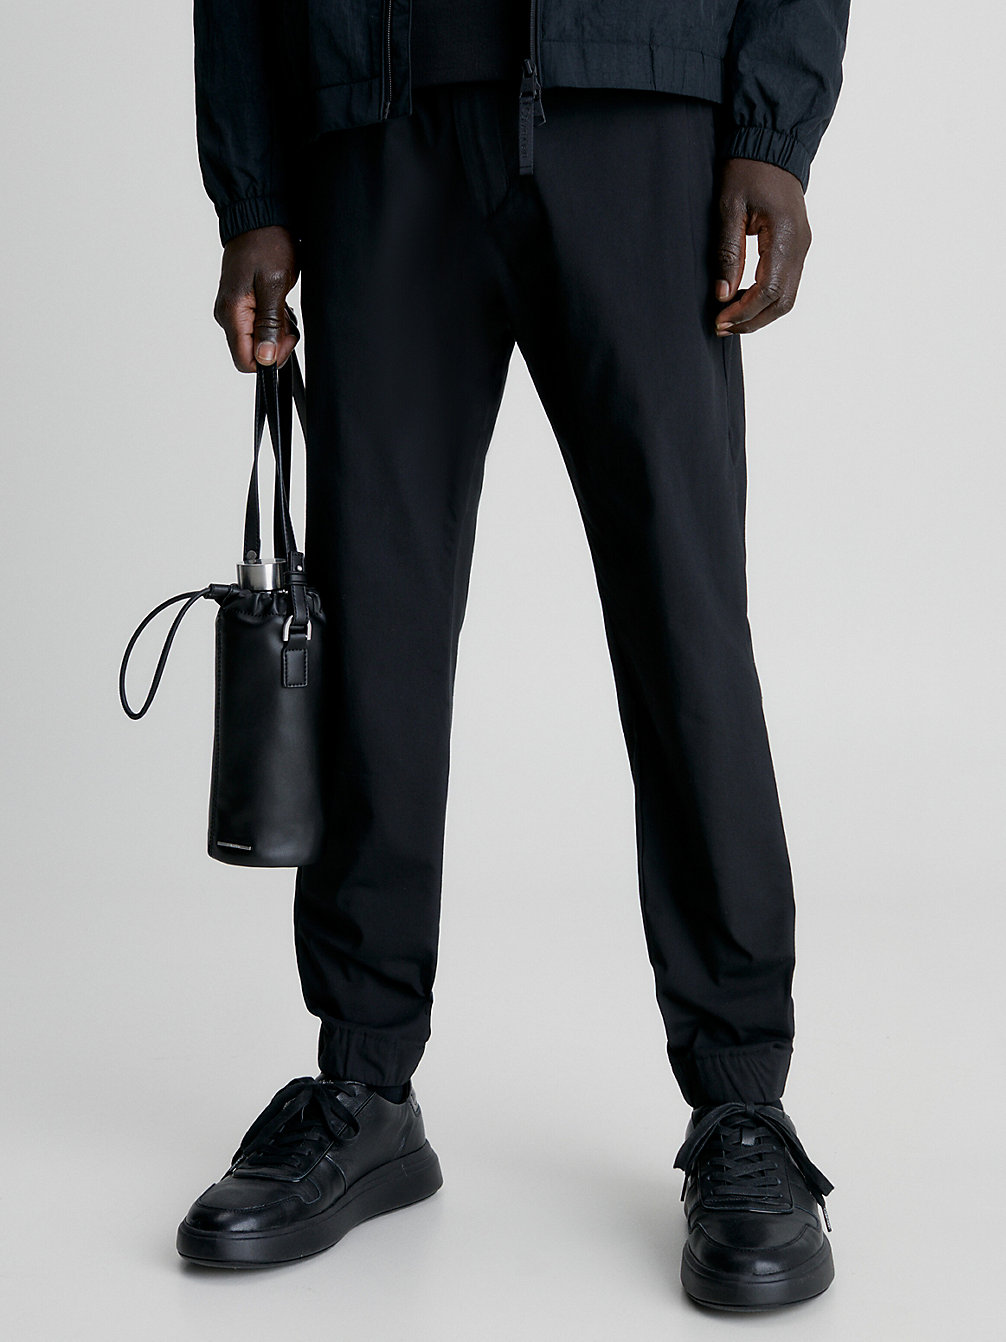 CK BLACK Pantalon Fuselé Court undefined hommes Calvin Klein